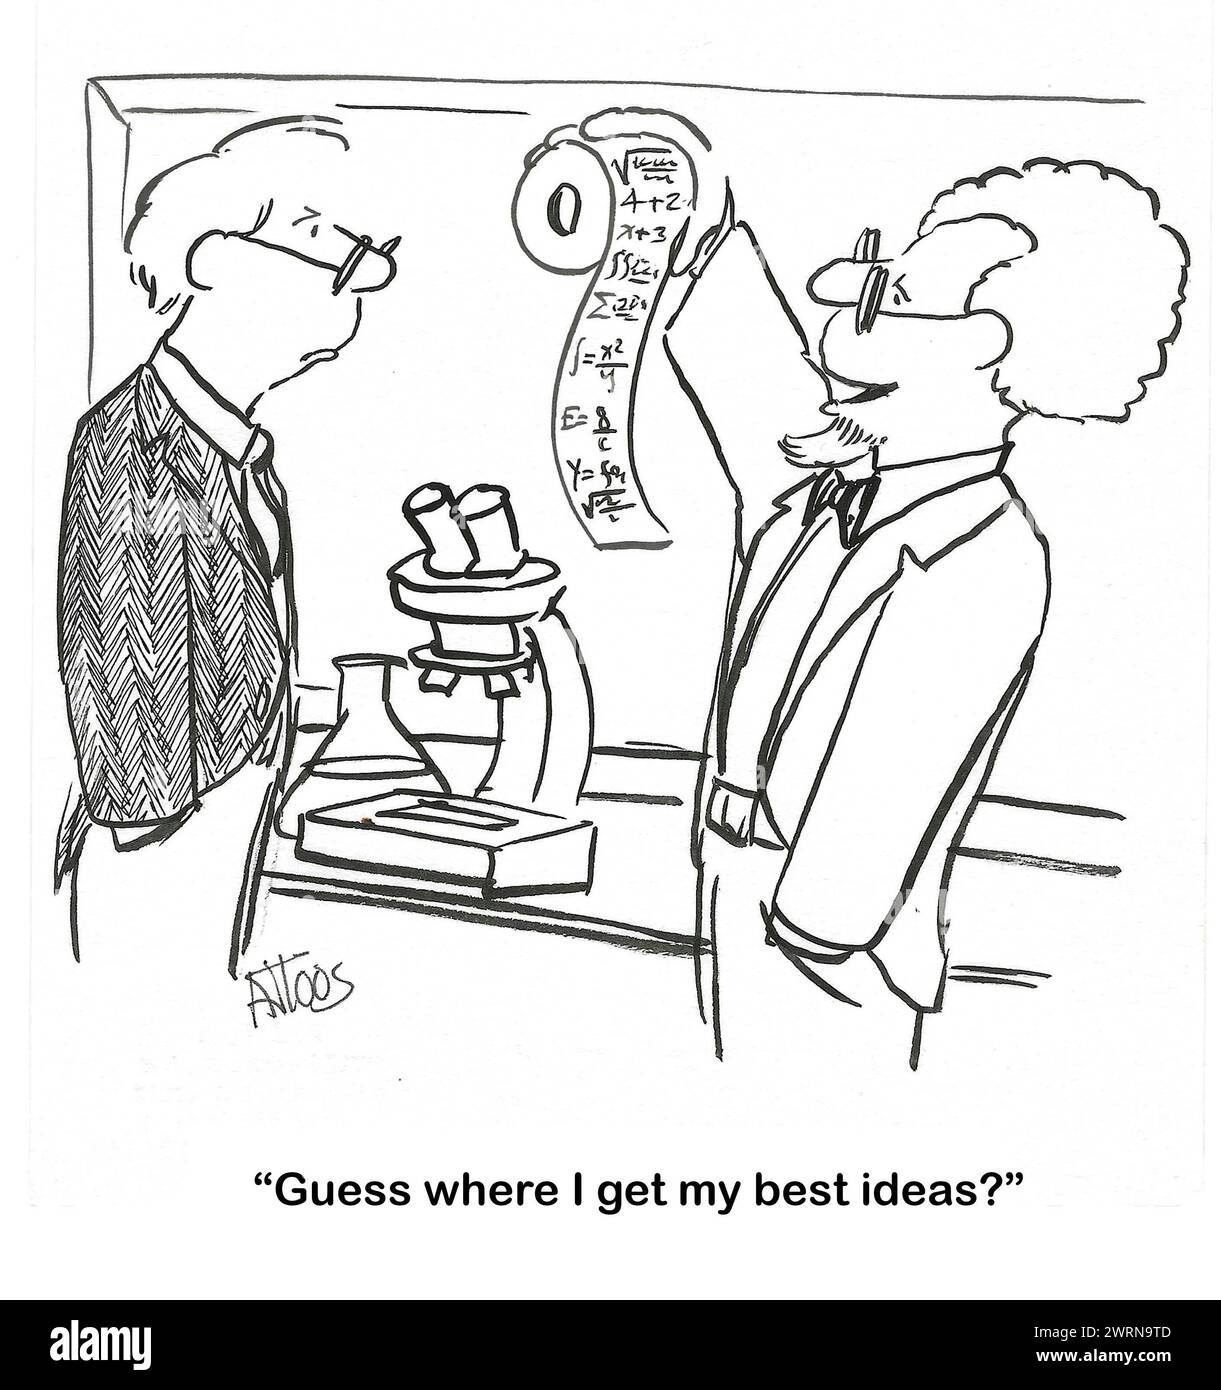 BW-Cartoon eines Wissenschaftlers, der seine besten Ideen im Badezimmer bekommt. Stockfoto